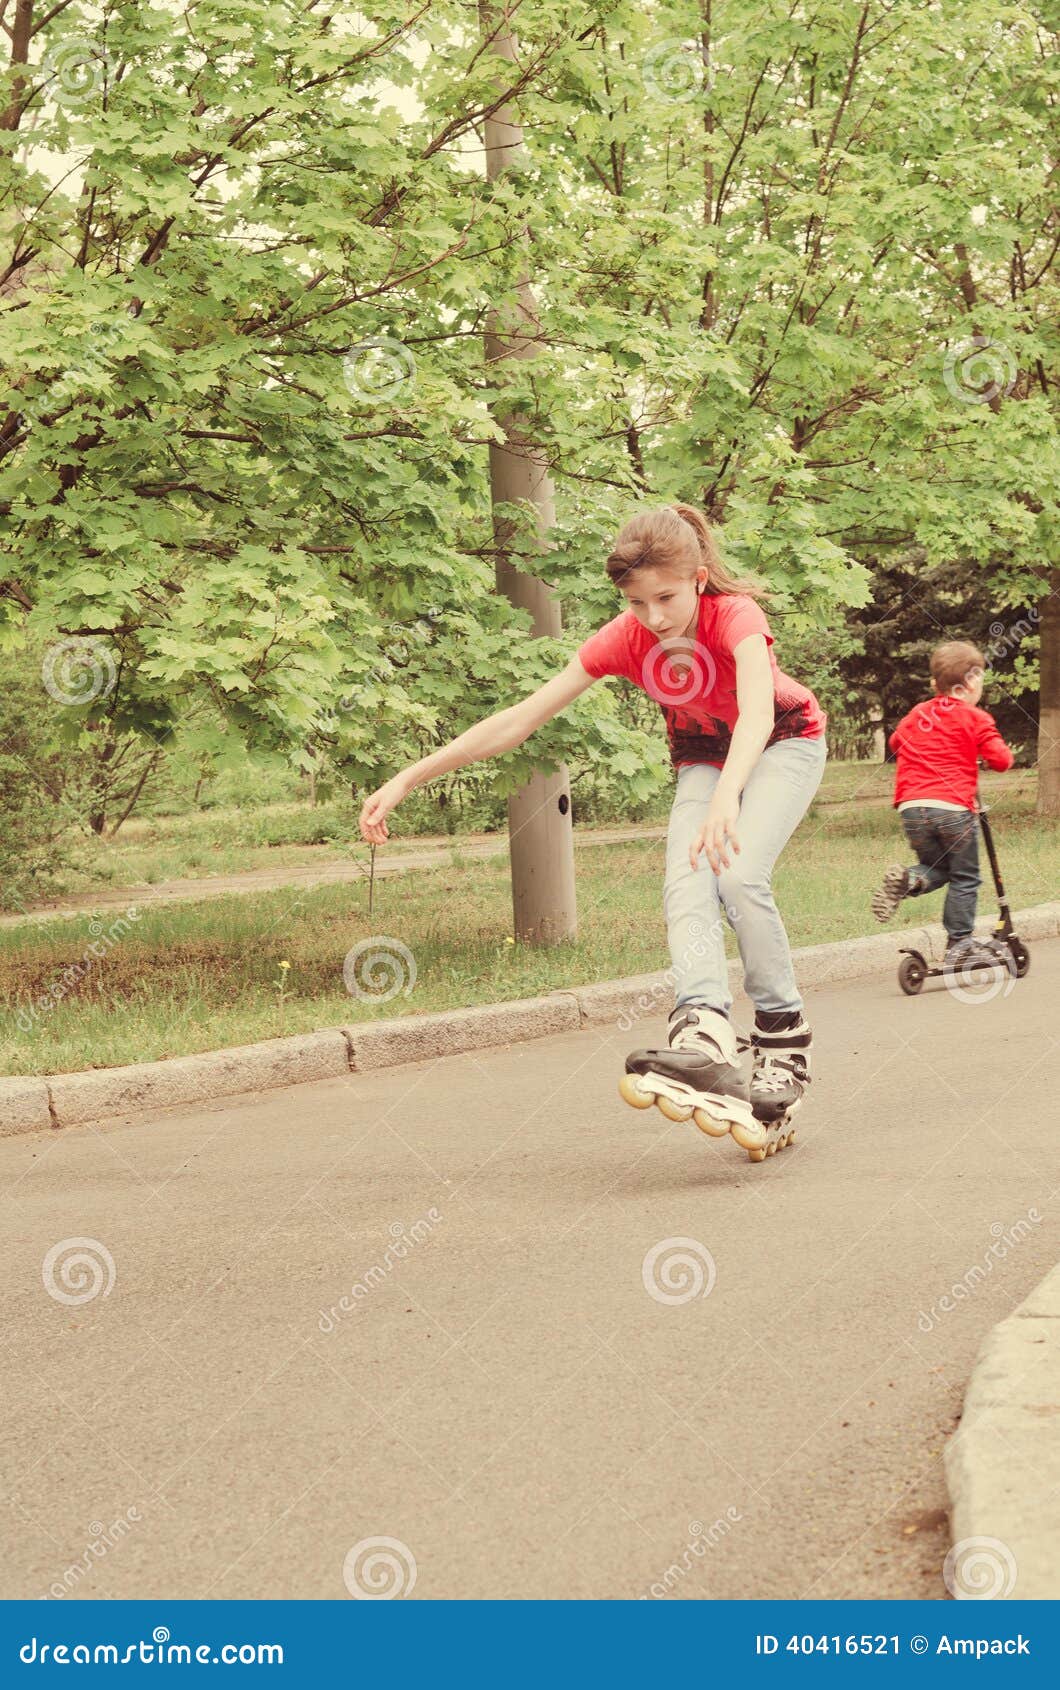 Patinaje sobre ruedas experto atlético de la chica joven. El patinaje sobre ruedas joven experto atlético del adolescente en las cuchillas del rodillo en un muchacho joven del camino rural monta su vespa detrás de ella